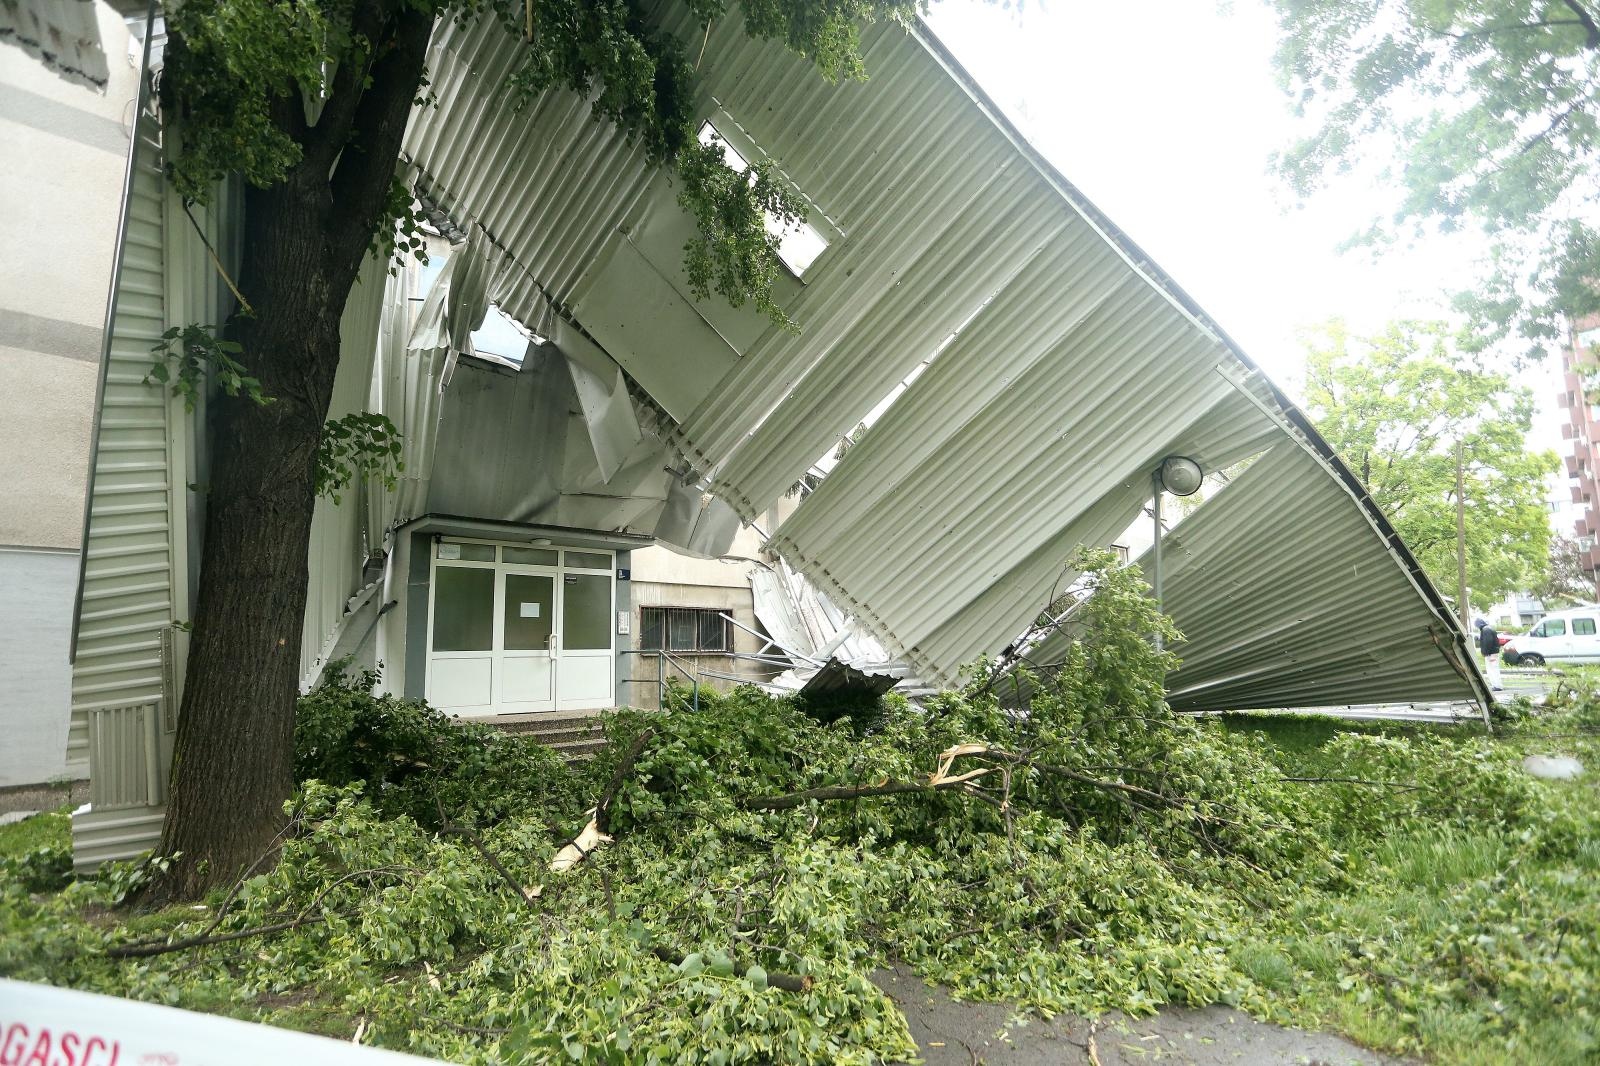 Vjetar je otpuhao gotovo cijeli limeni krov sa zgrade.